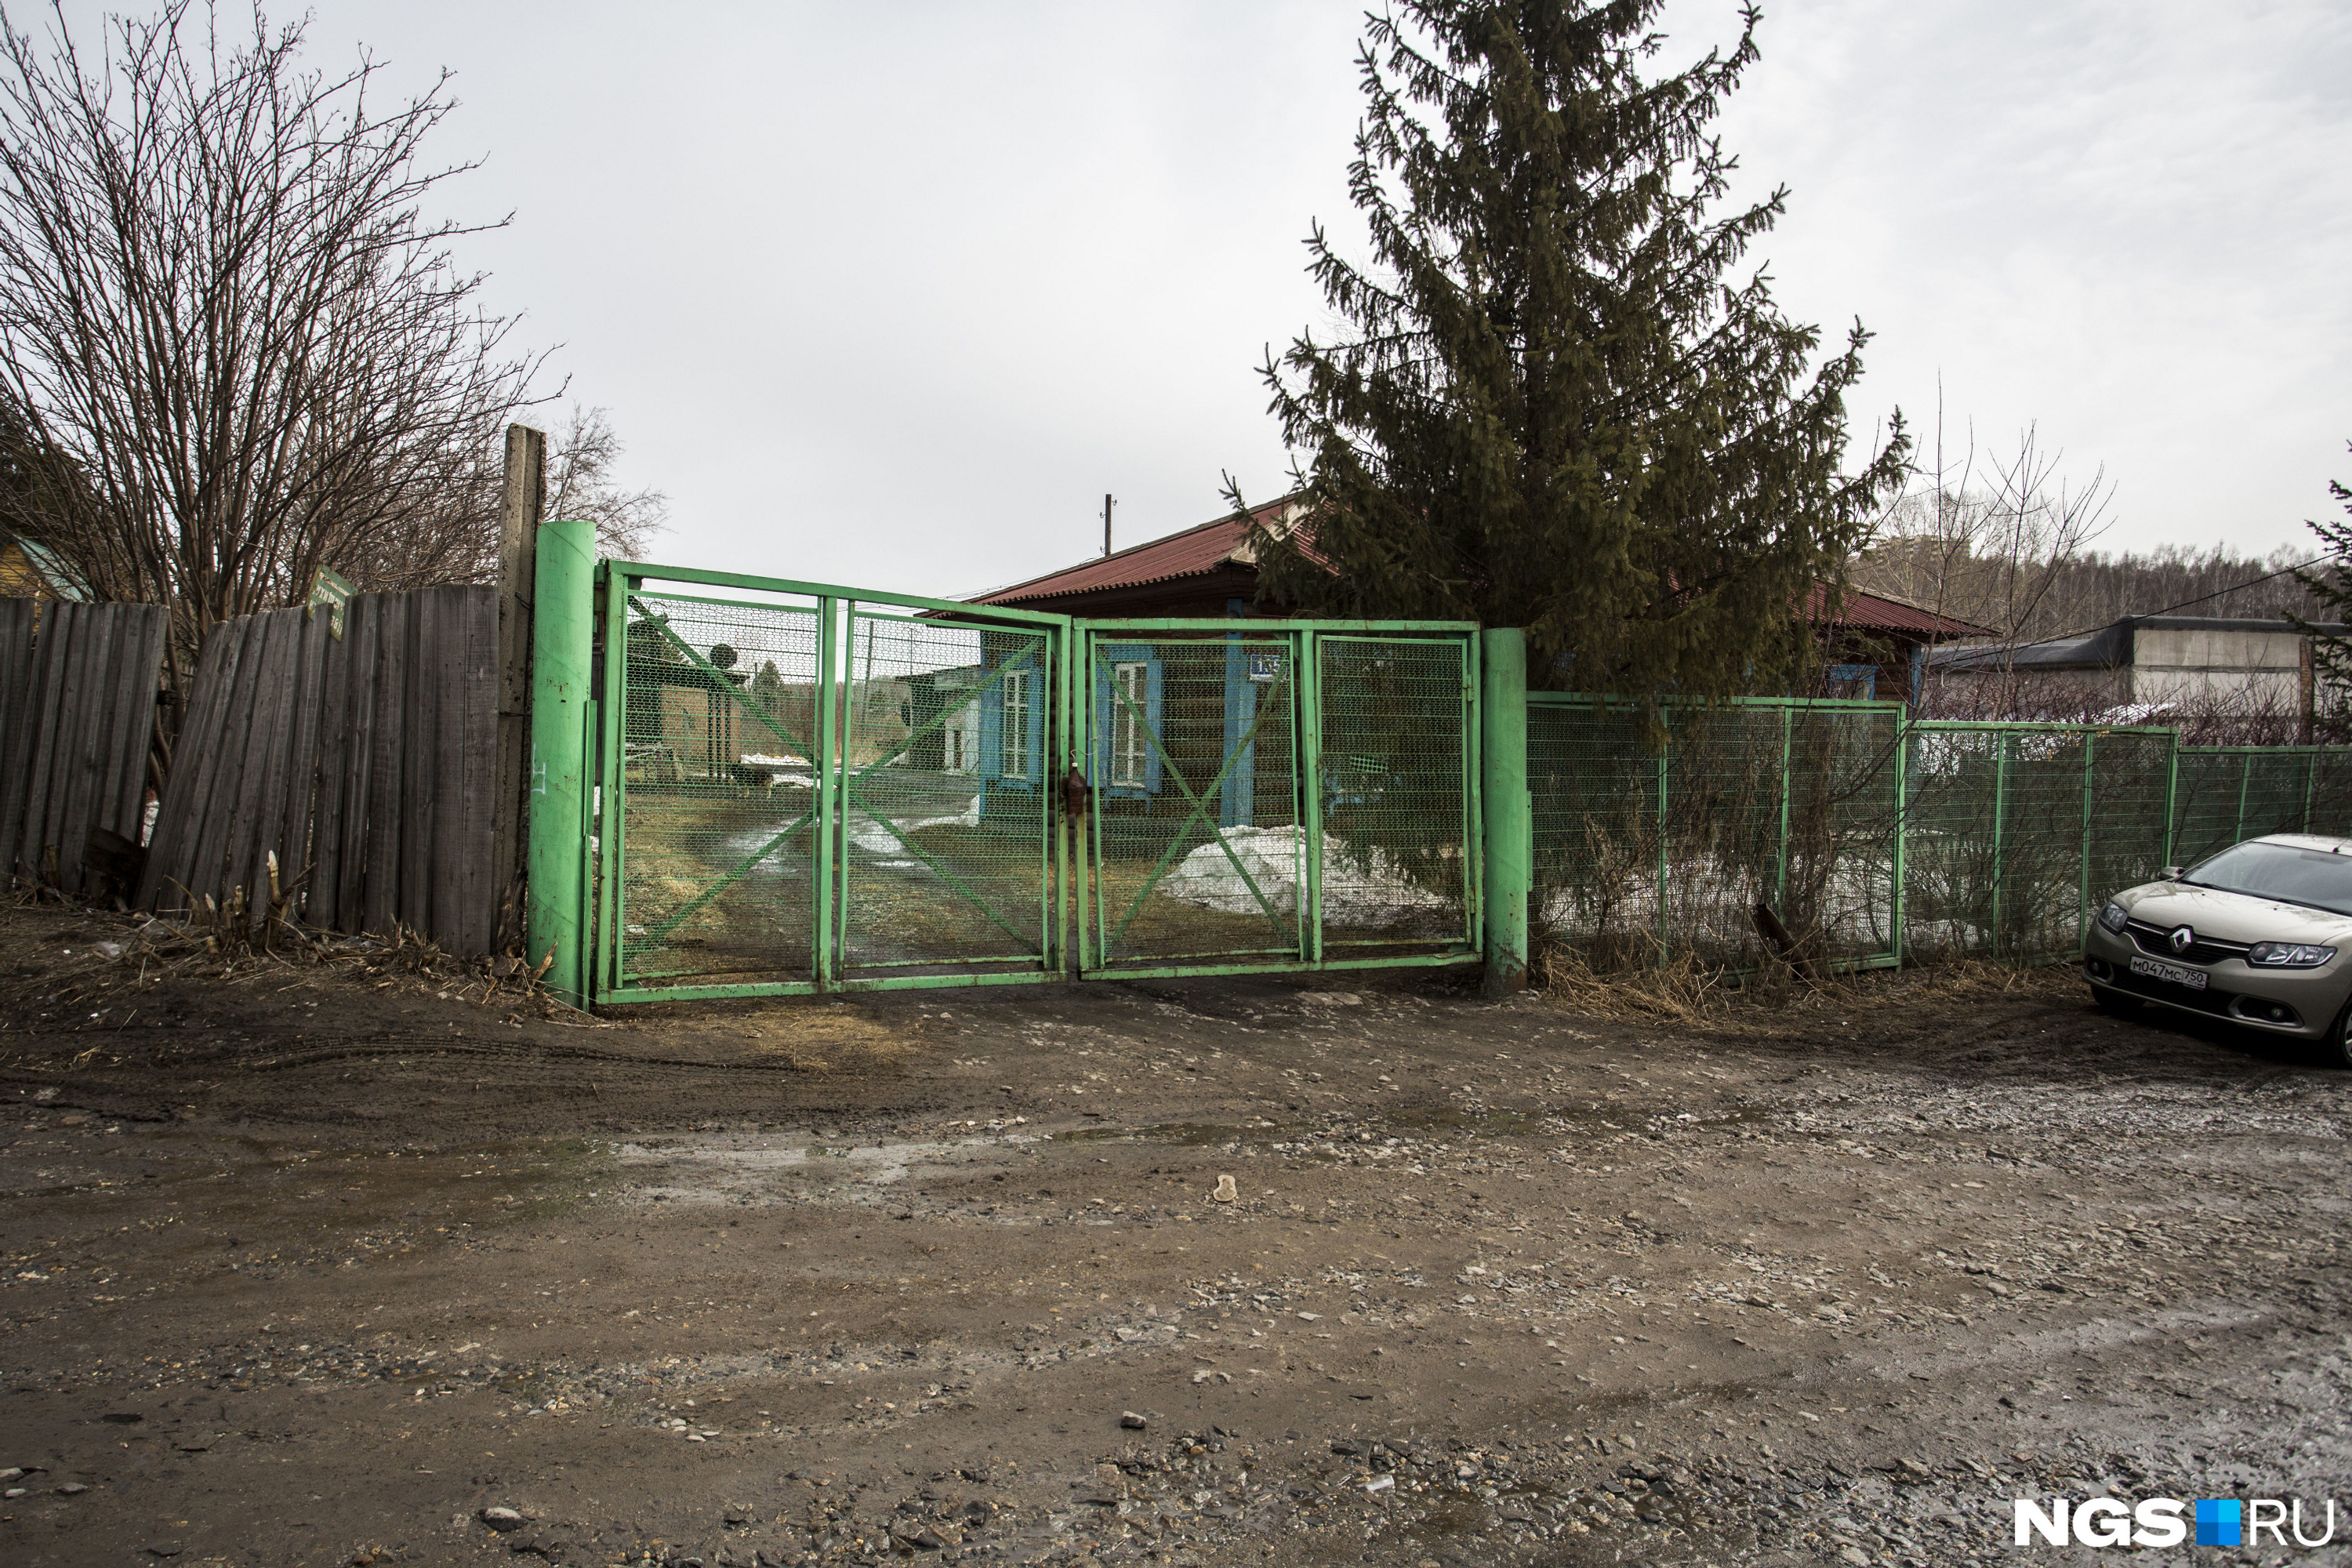 За забором — база дрессировщиков площадью почти 3 гектара, на которой гаражи и лес